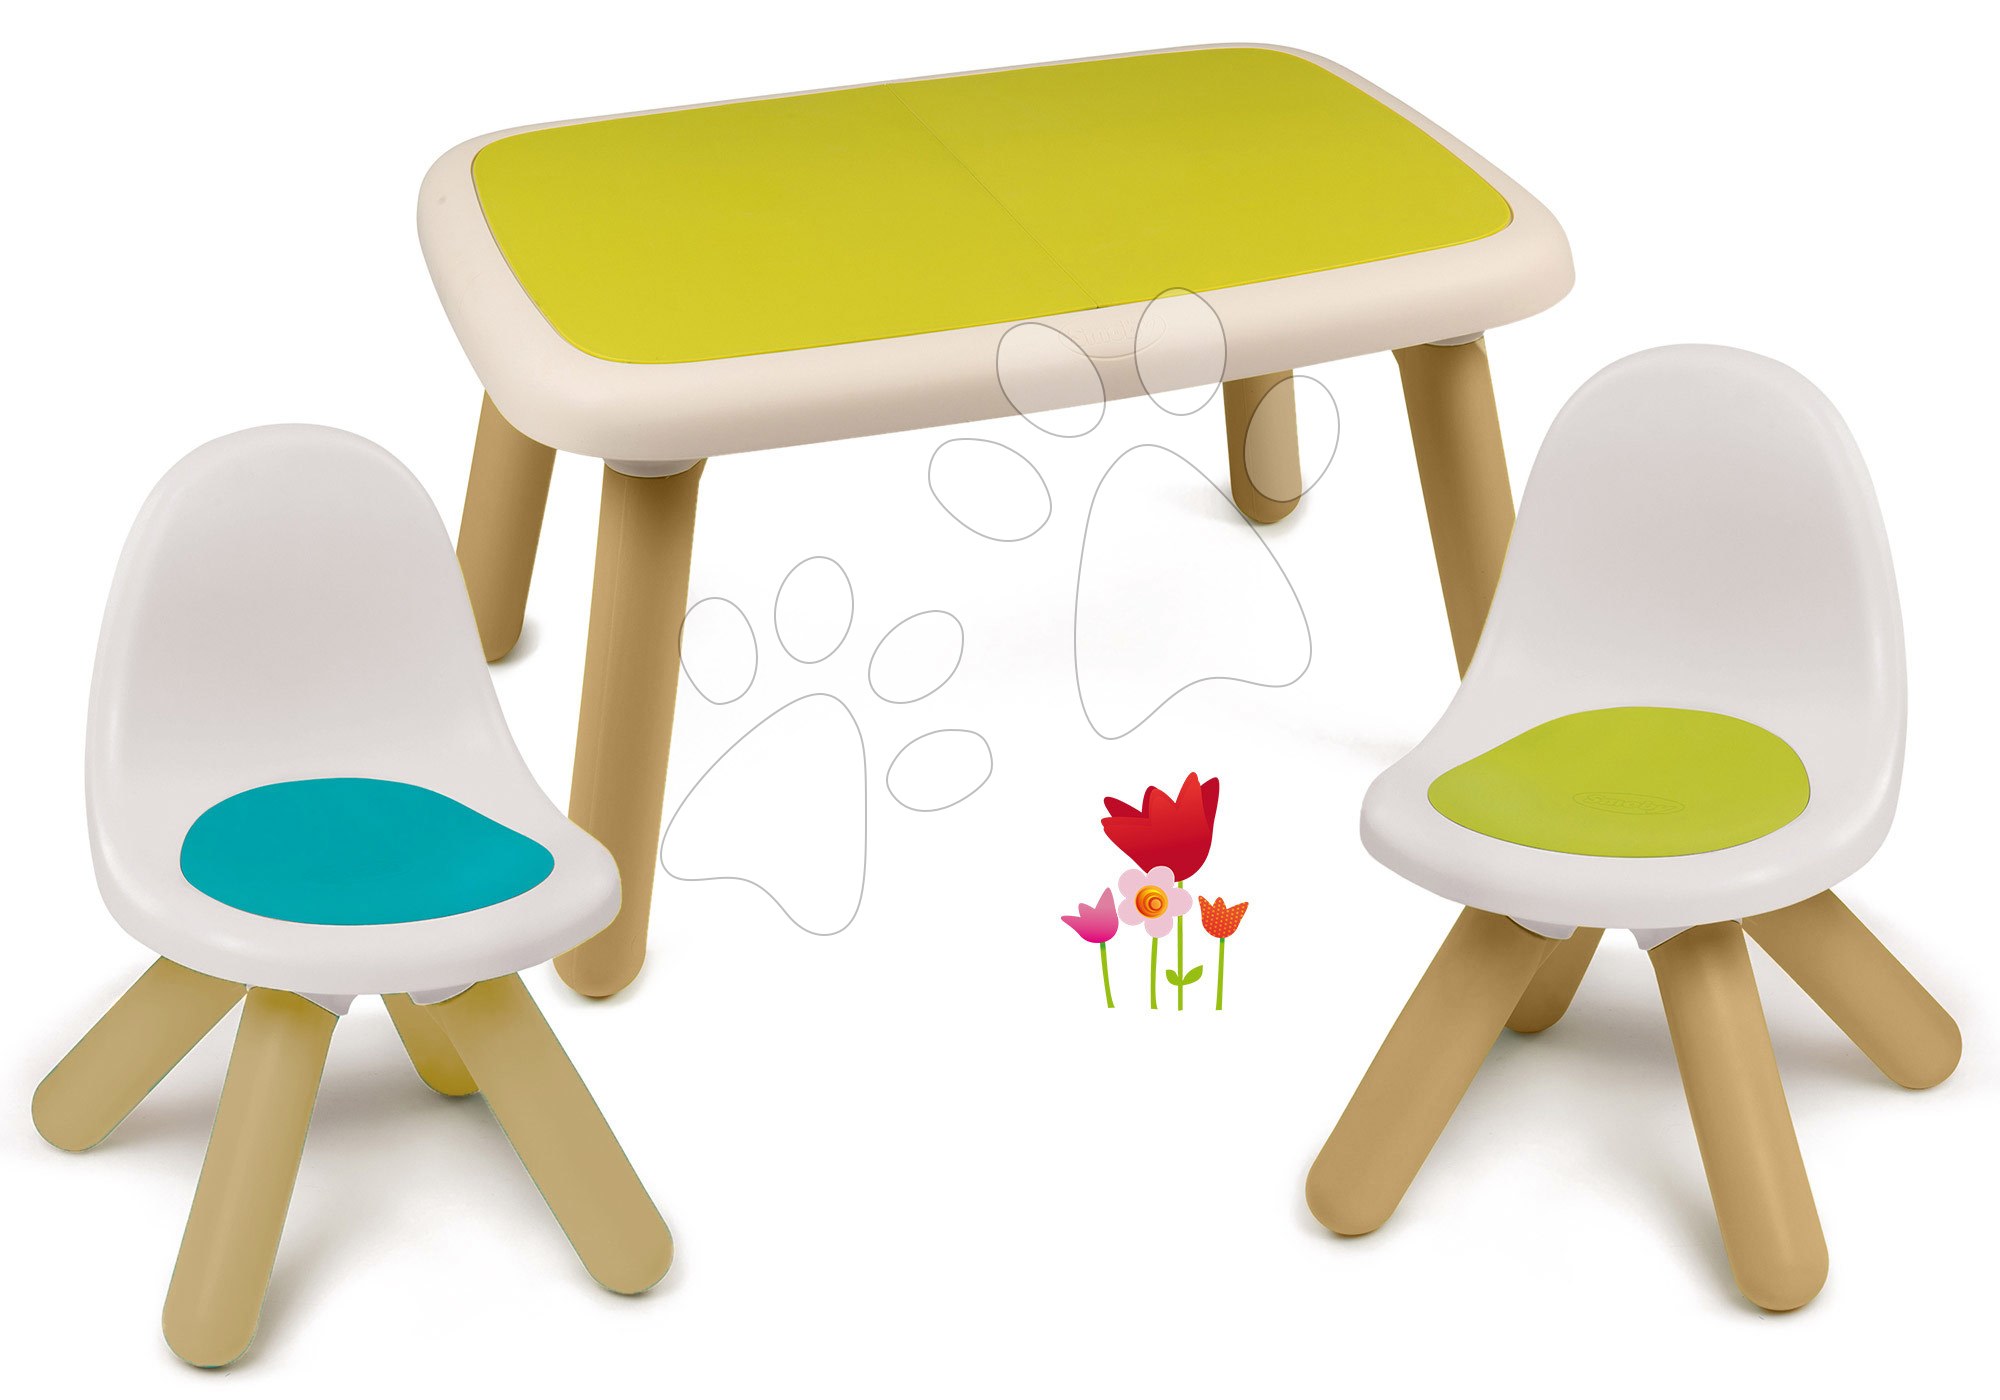 Dětský záhradní nábytek sety - Set stůl pro děti KidTable zelený Smoby se dvěma židlemi s UV filtrem